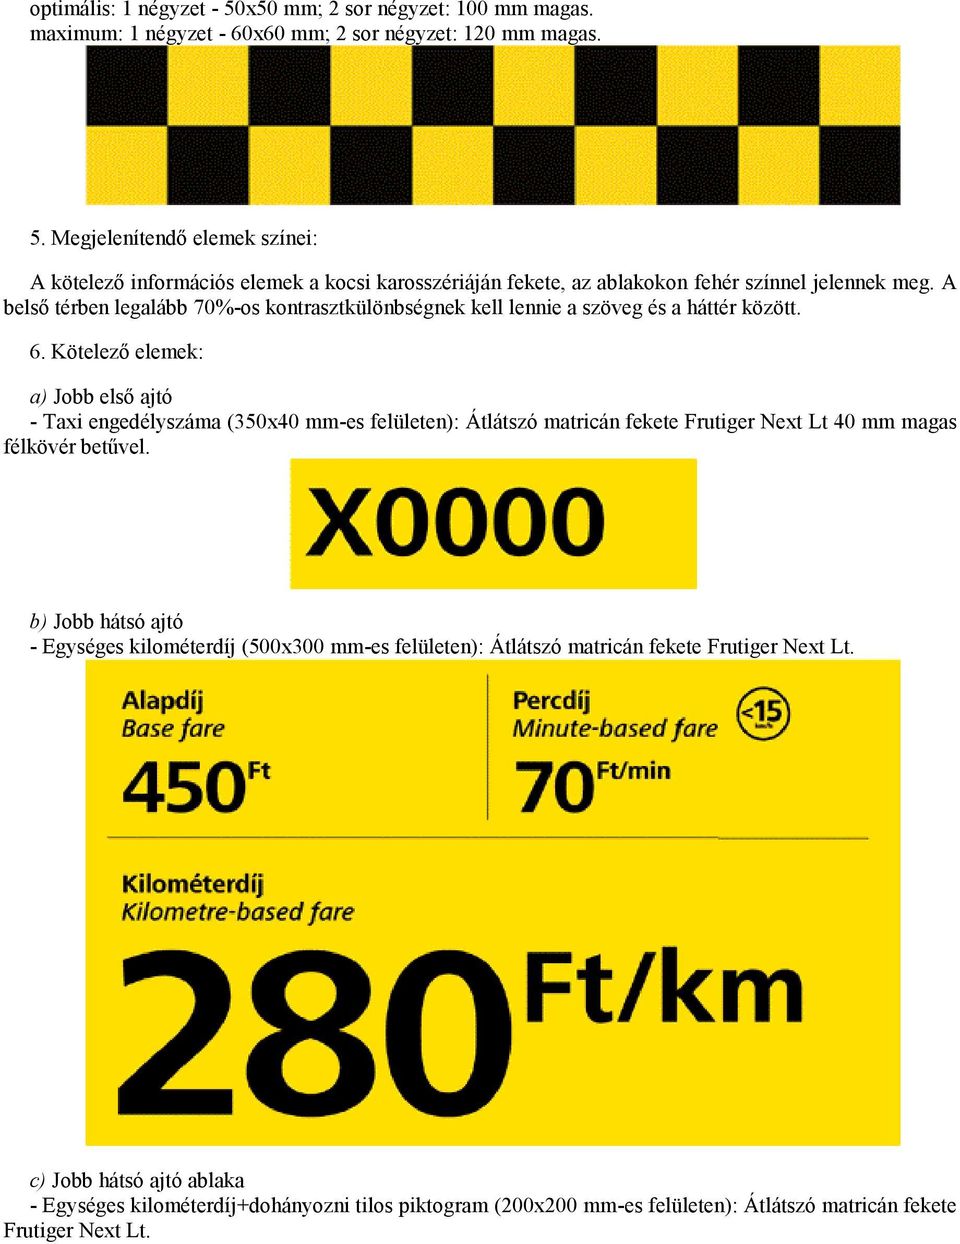 Kötelező elemek: a) Jobb első ajtó - Taxi engedélyszáma (350x40 mm-es felületen): Átlátszó matricán fekete Frutiger Next Lt 40 mm magas félkövér betűvel.